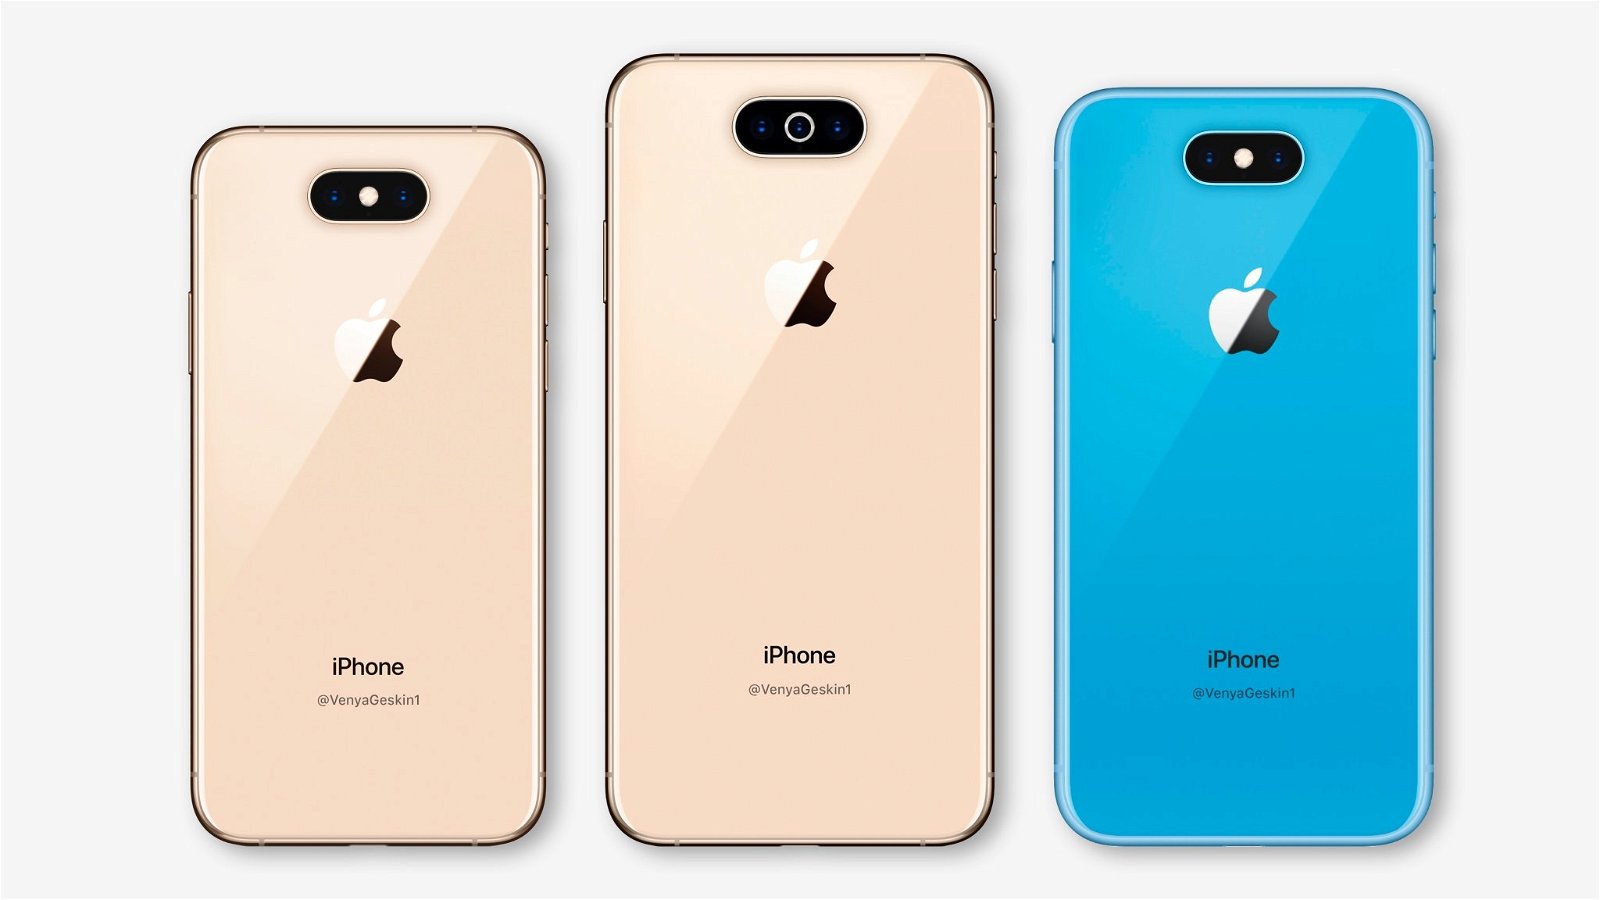 ¿iPhone XI o iPhone 11? Todo lo que sabemos de los iPhone de 2019